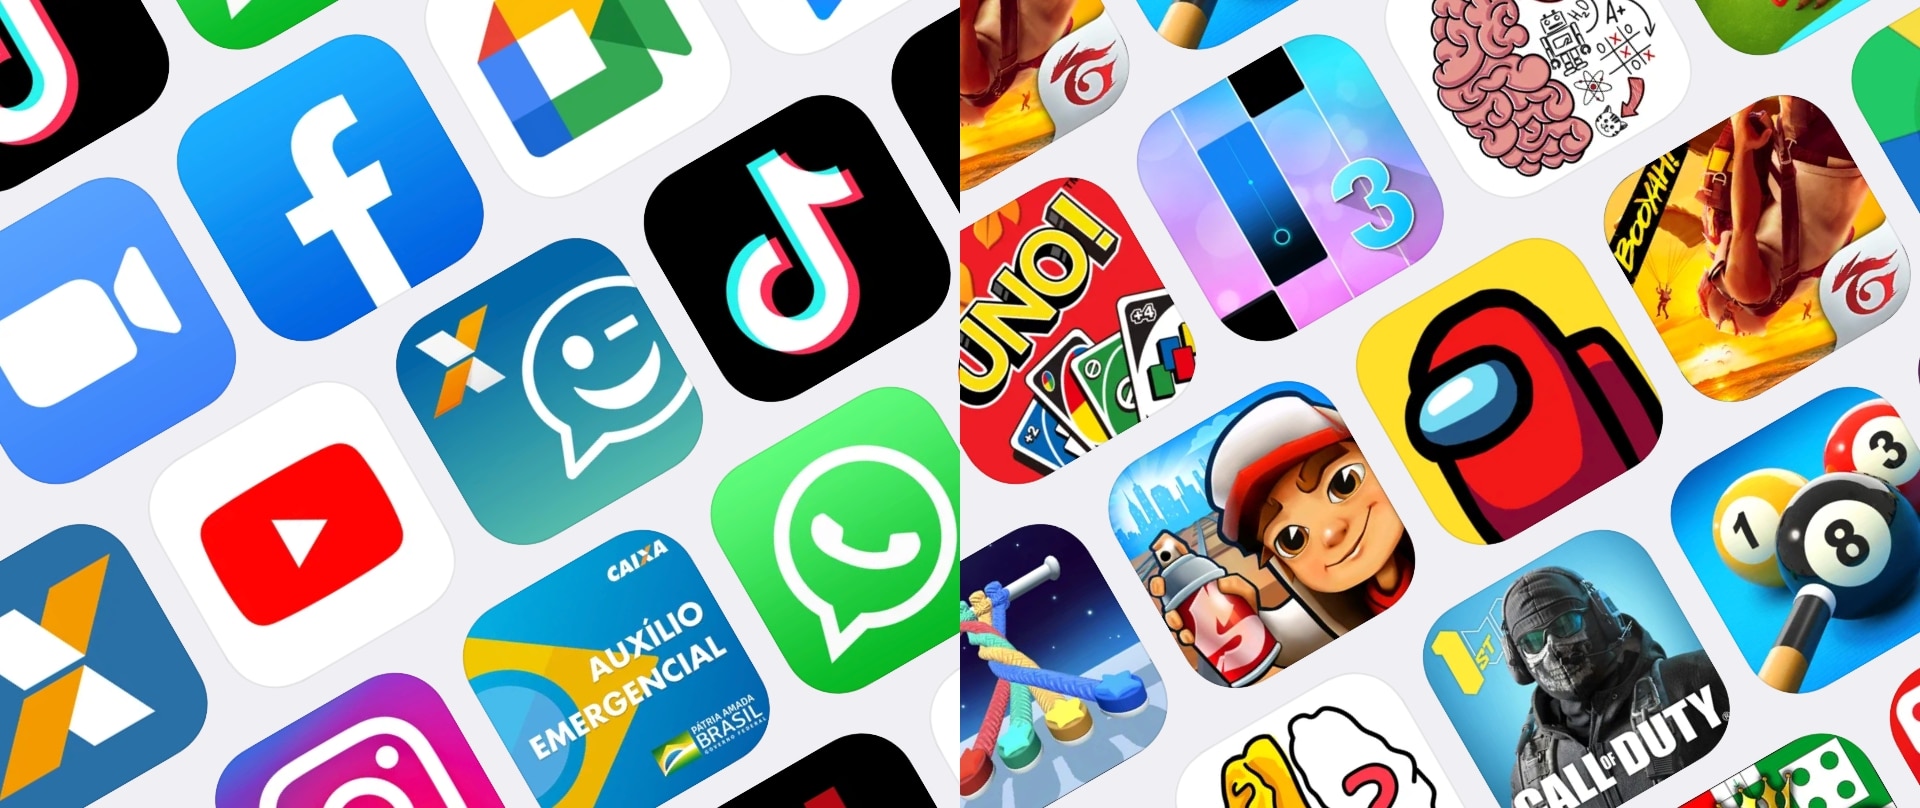 Apple revela quais as melhores apps e jogos em 2020